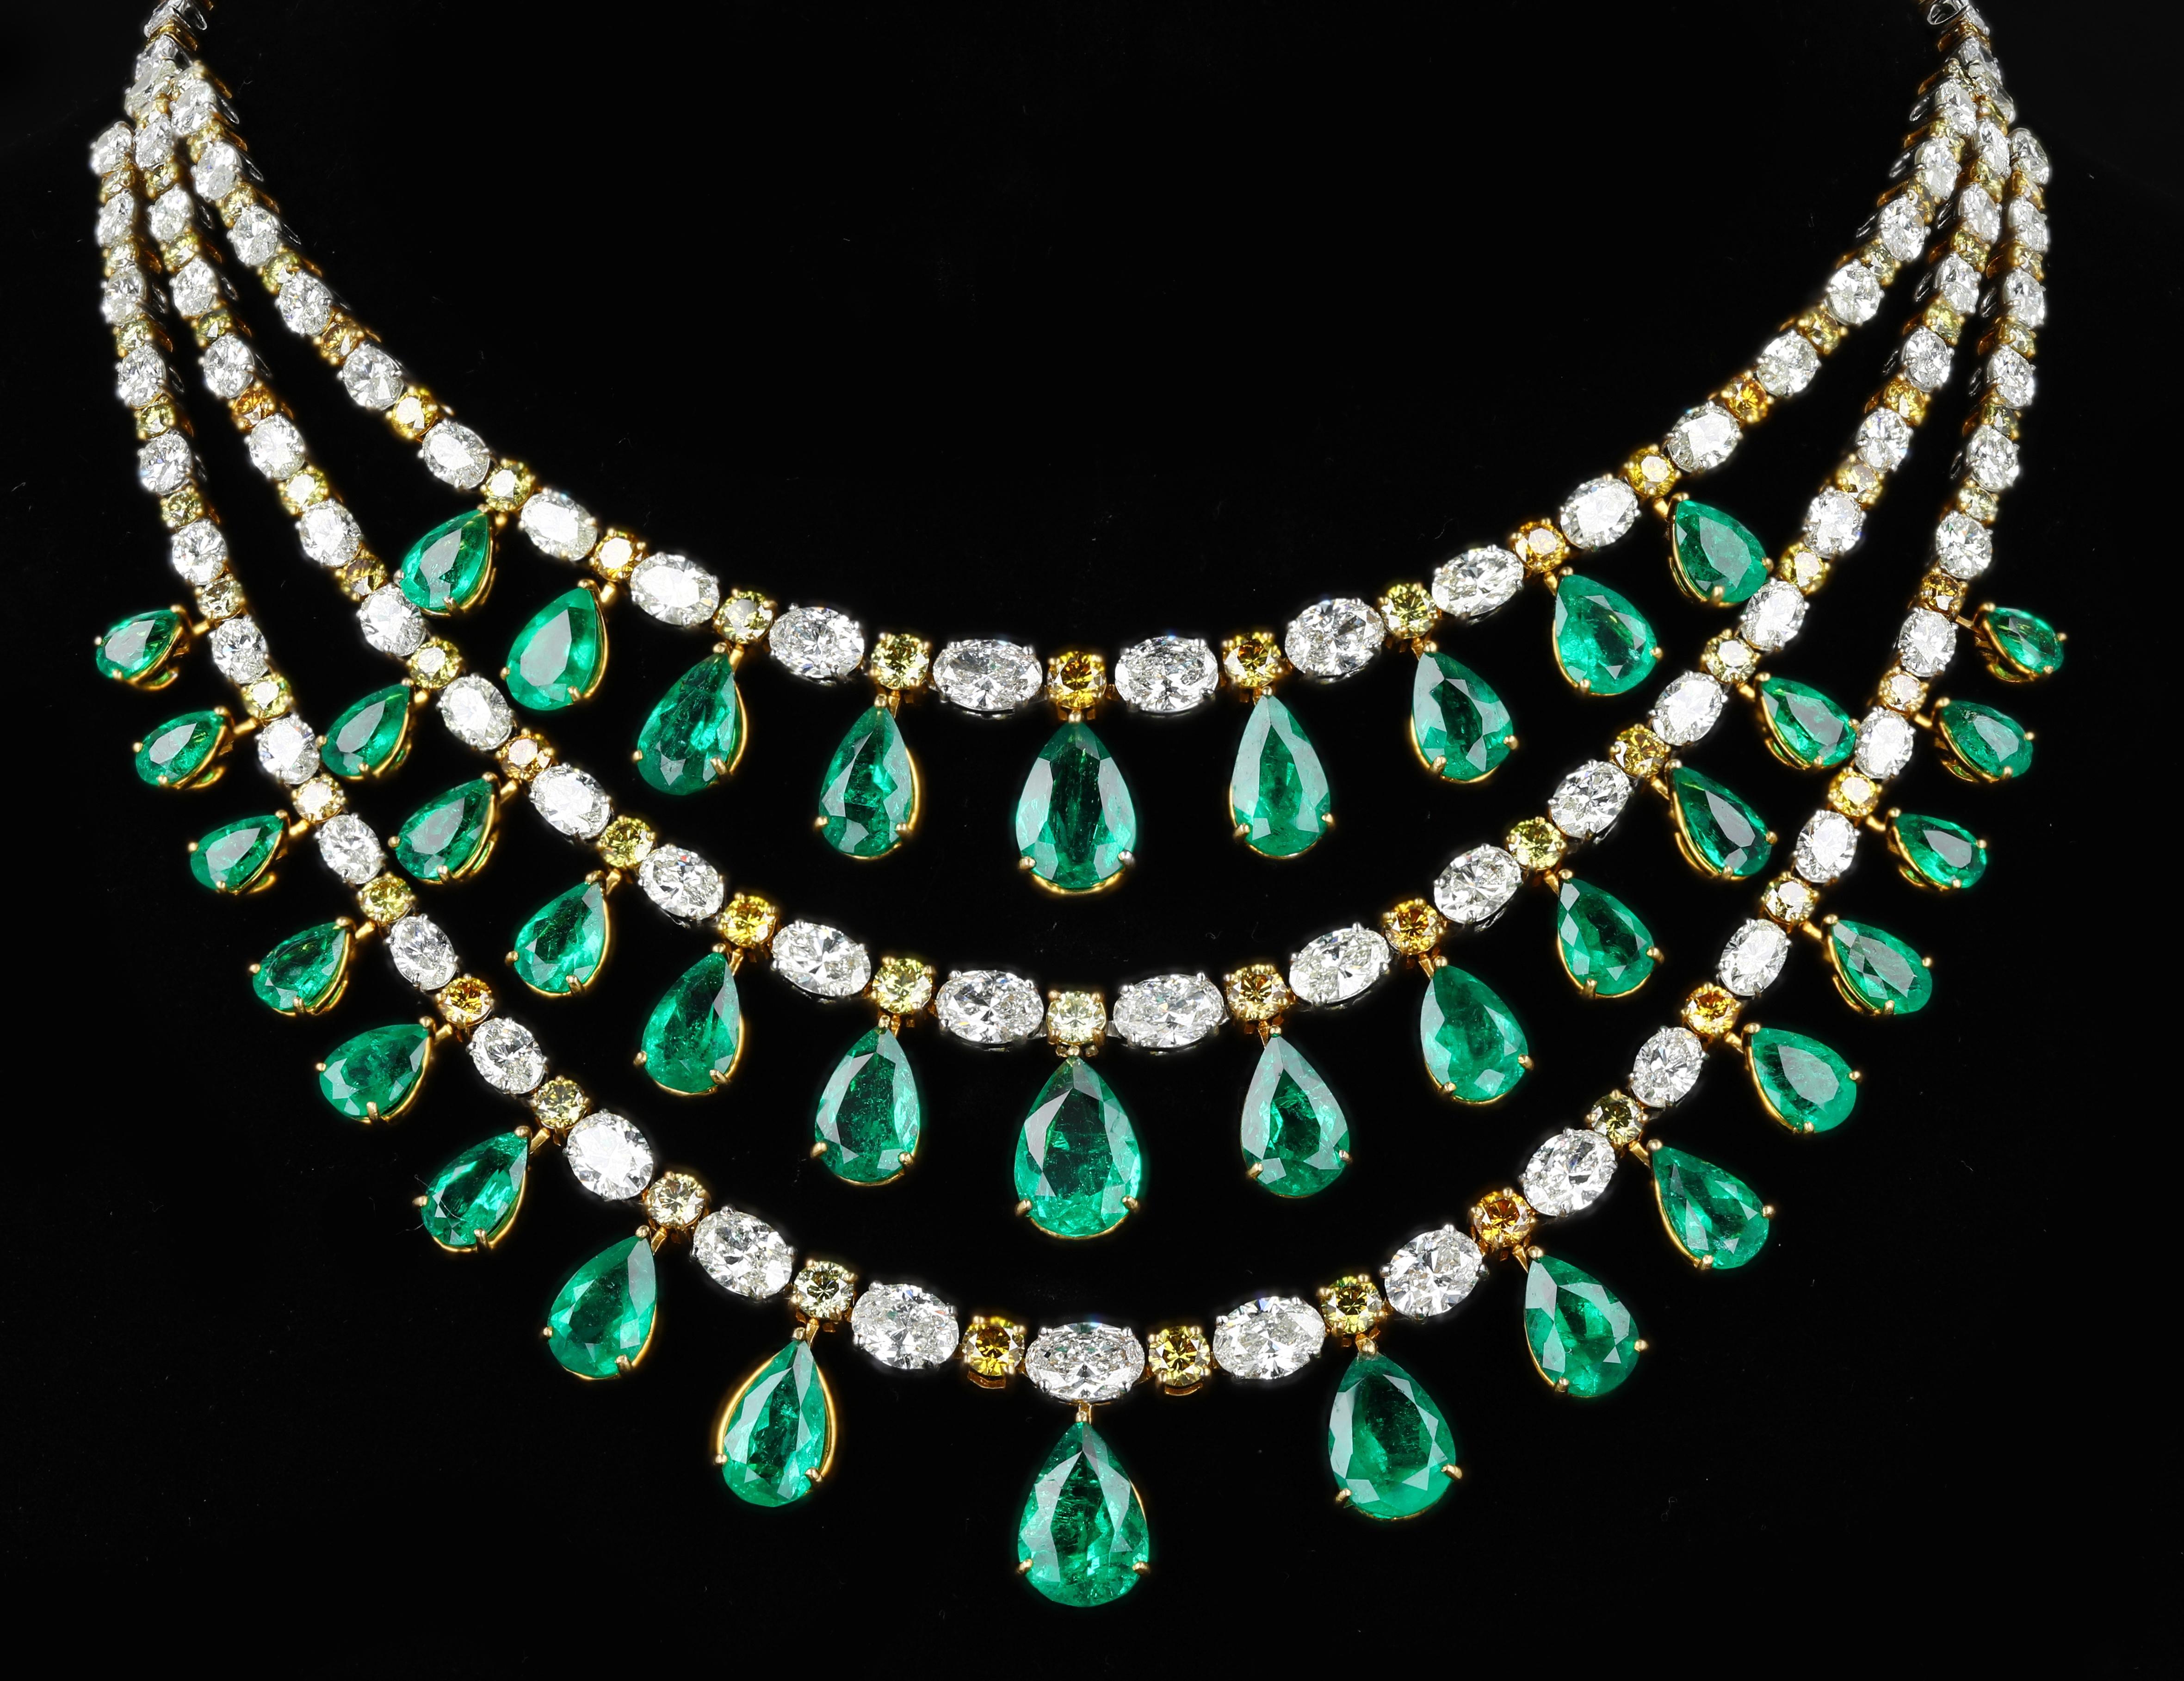 Collier classique à 3 rangs d'émeraudes de Colombie avec diamants jaunes et blancs, serti de 52,81 carats de diamants et 46,83 carats d'émeraudes 